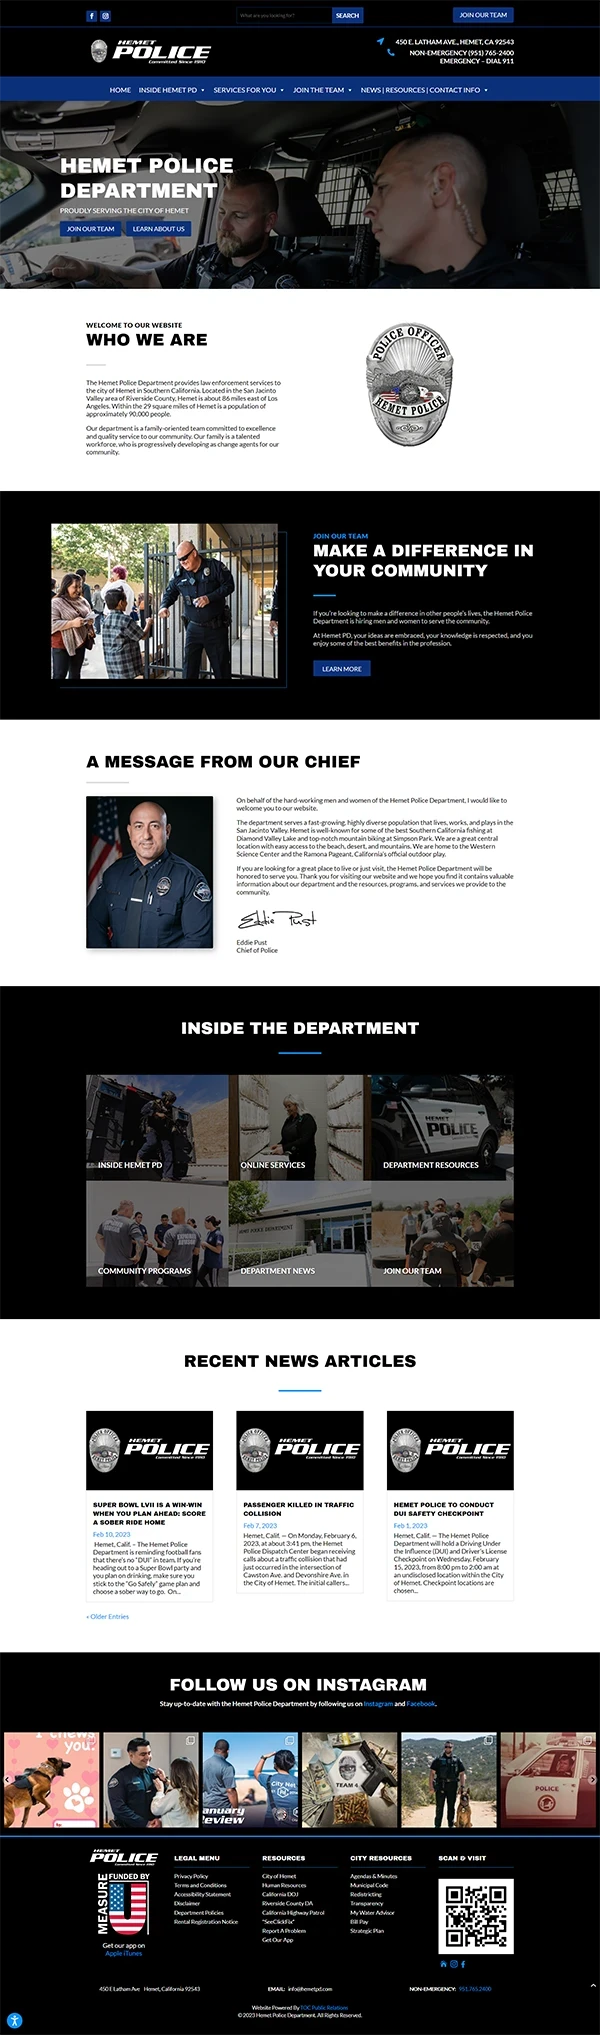 Hemet Police Department's Website Home Page